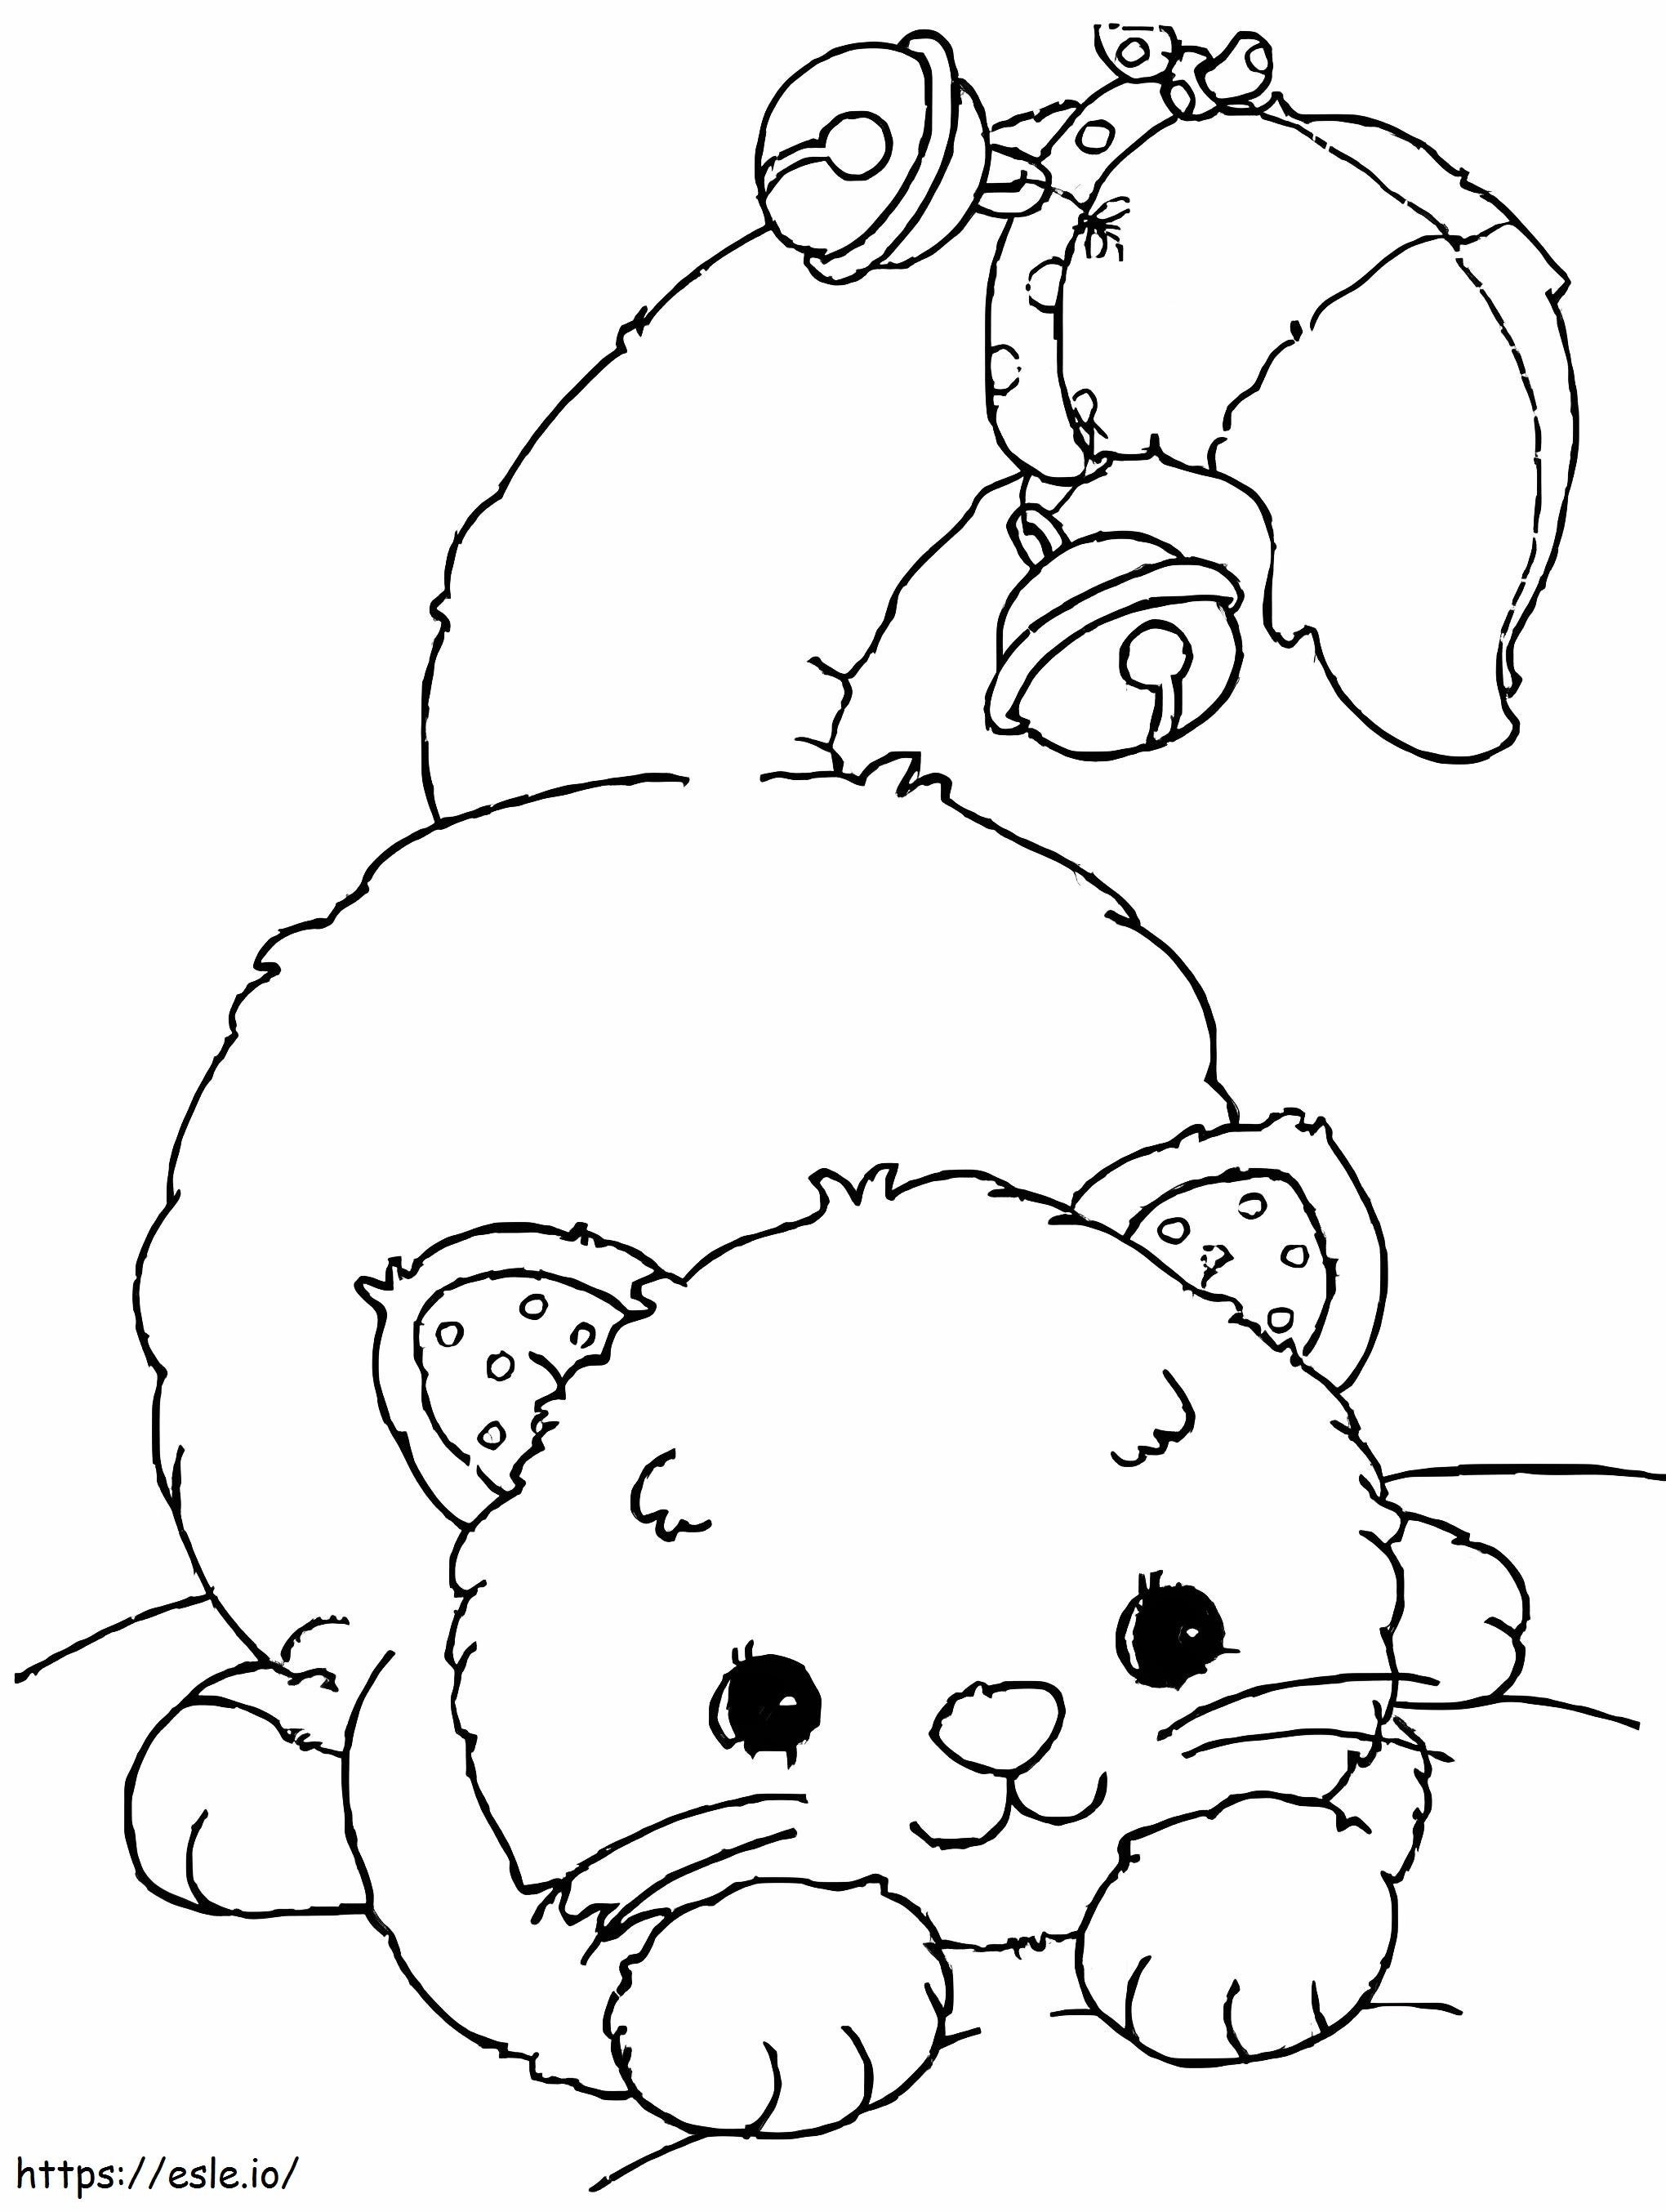 Çanlı Yavru Kedi boyama